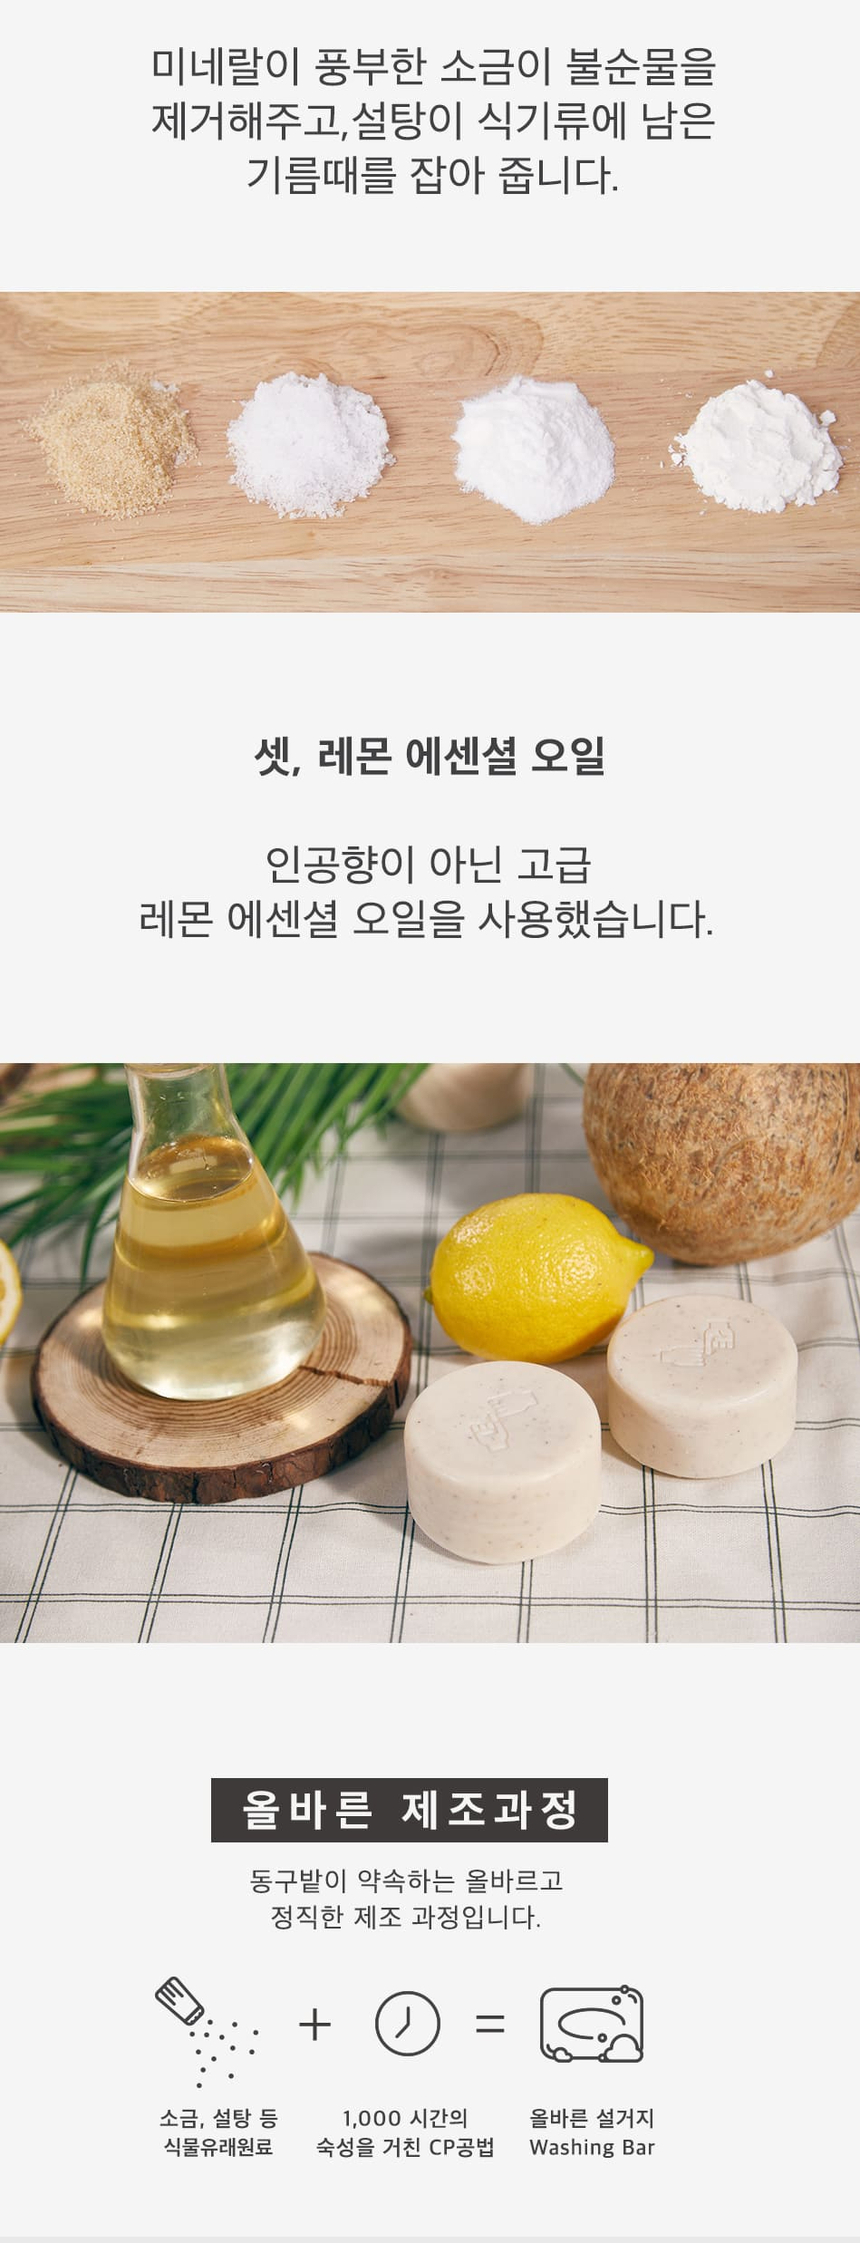 韓國食品-[동구밭] 올바른설거지워싱바 150g